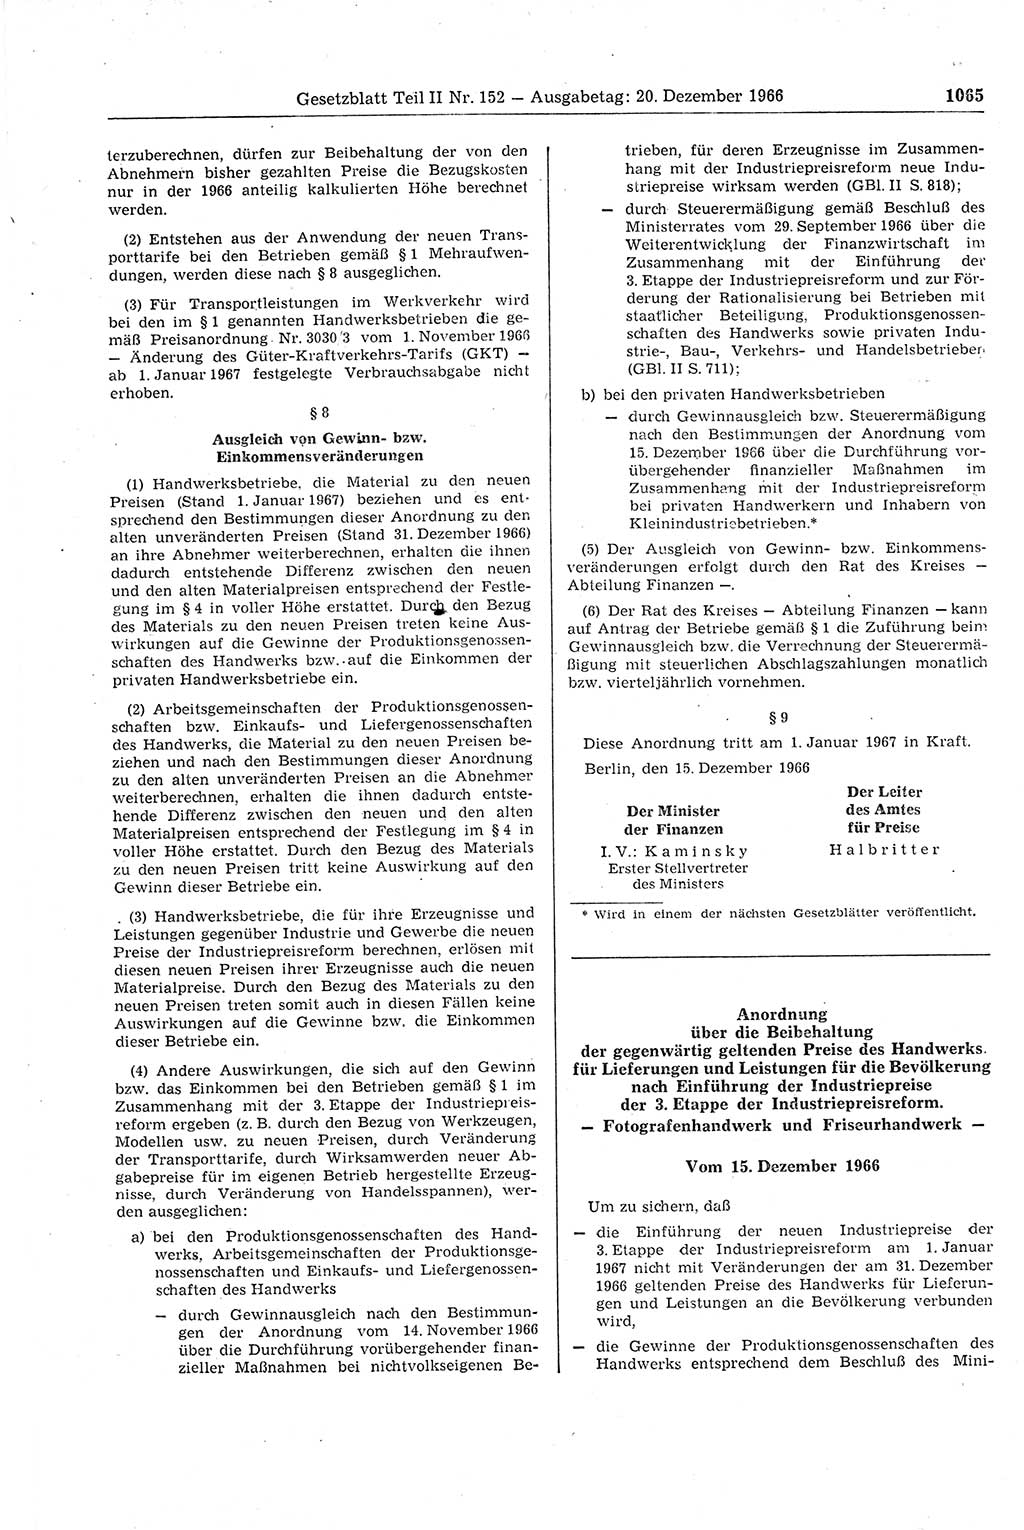 Gesetzblatt (GBl.) der Deutschen Demokratischen Republik (DDR) Teil ⅠⅠ 1966, Seite 1065 (GBl. DDR ⅠⅠ 1966, S. 1065)